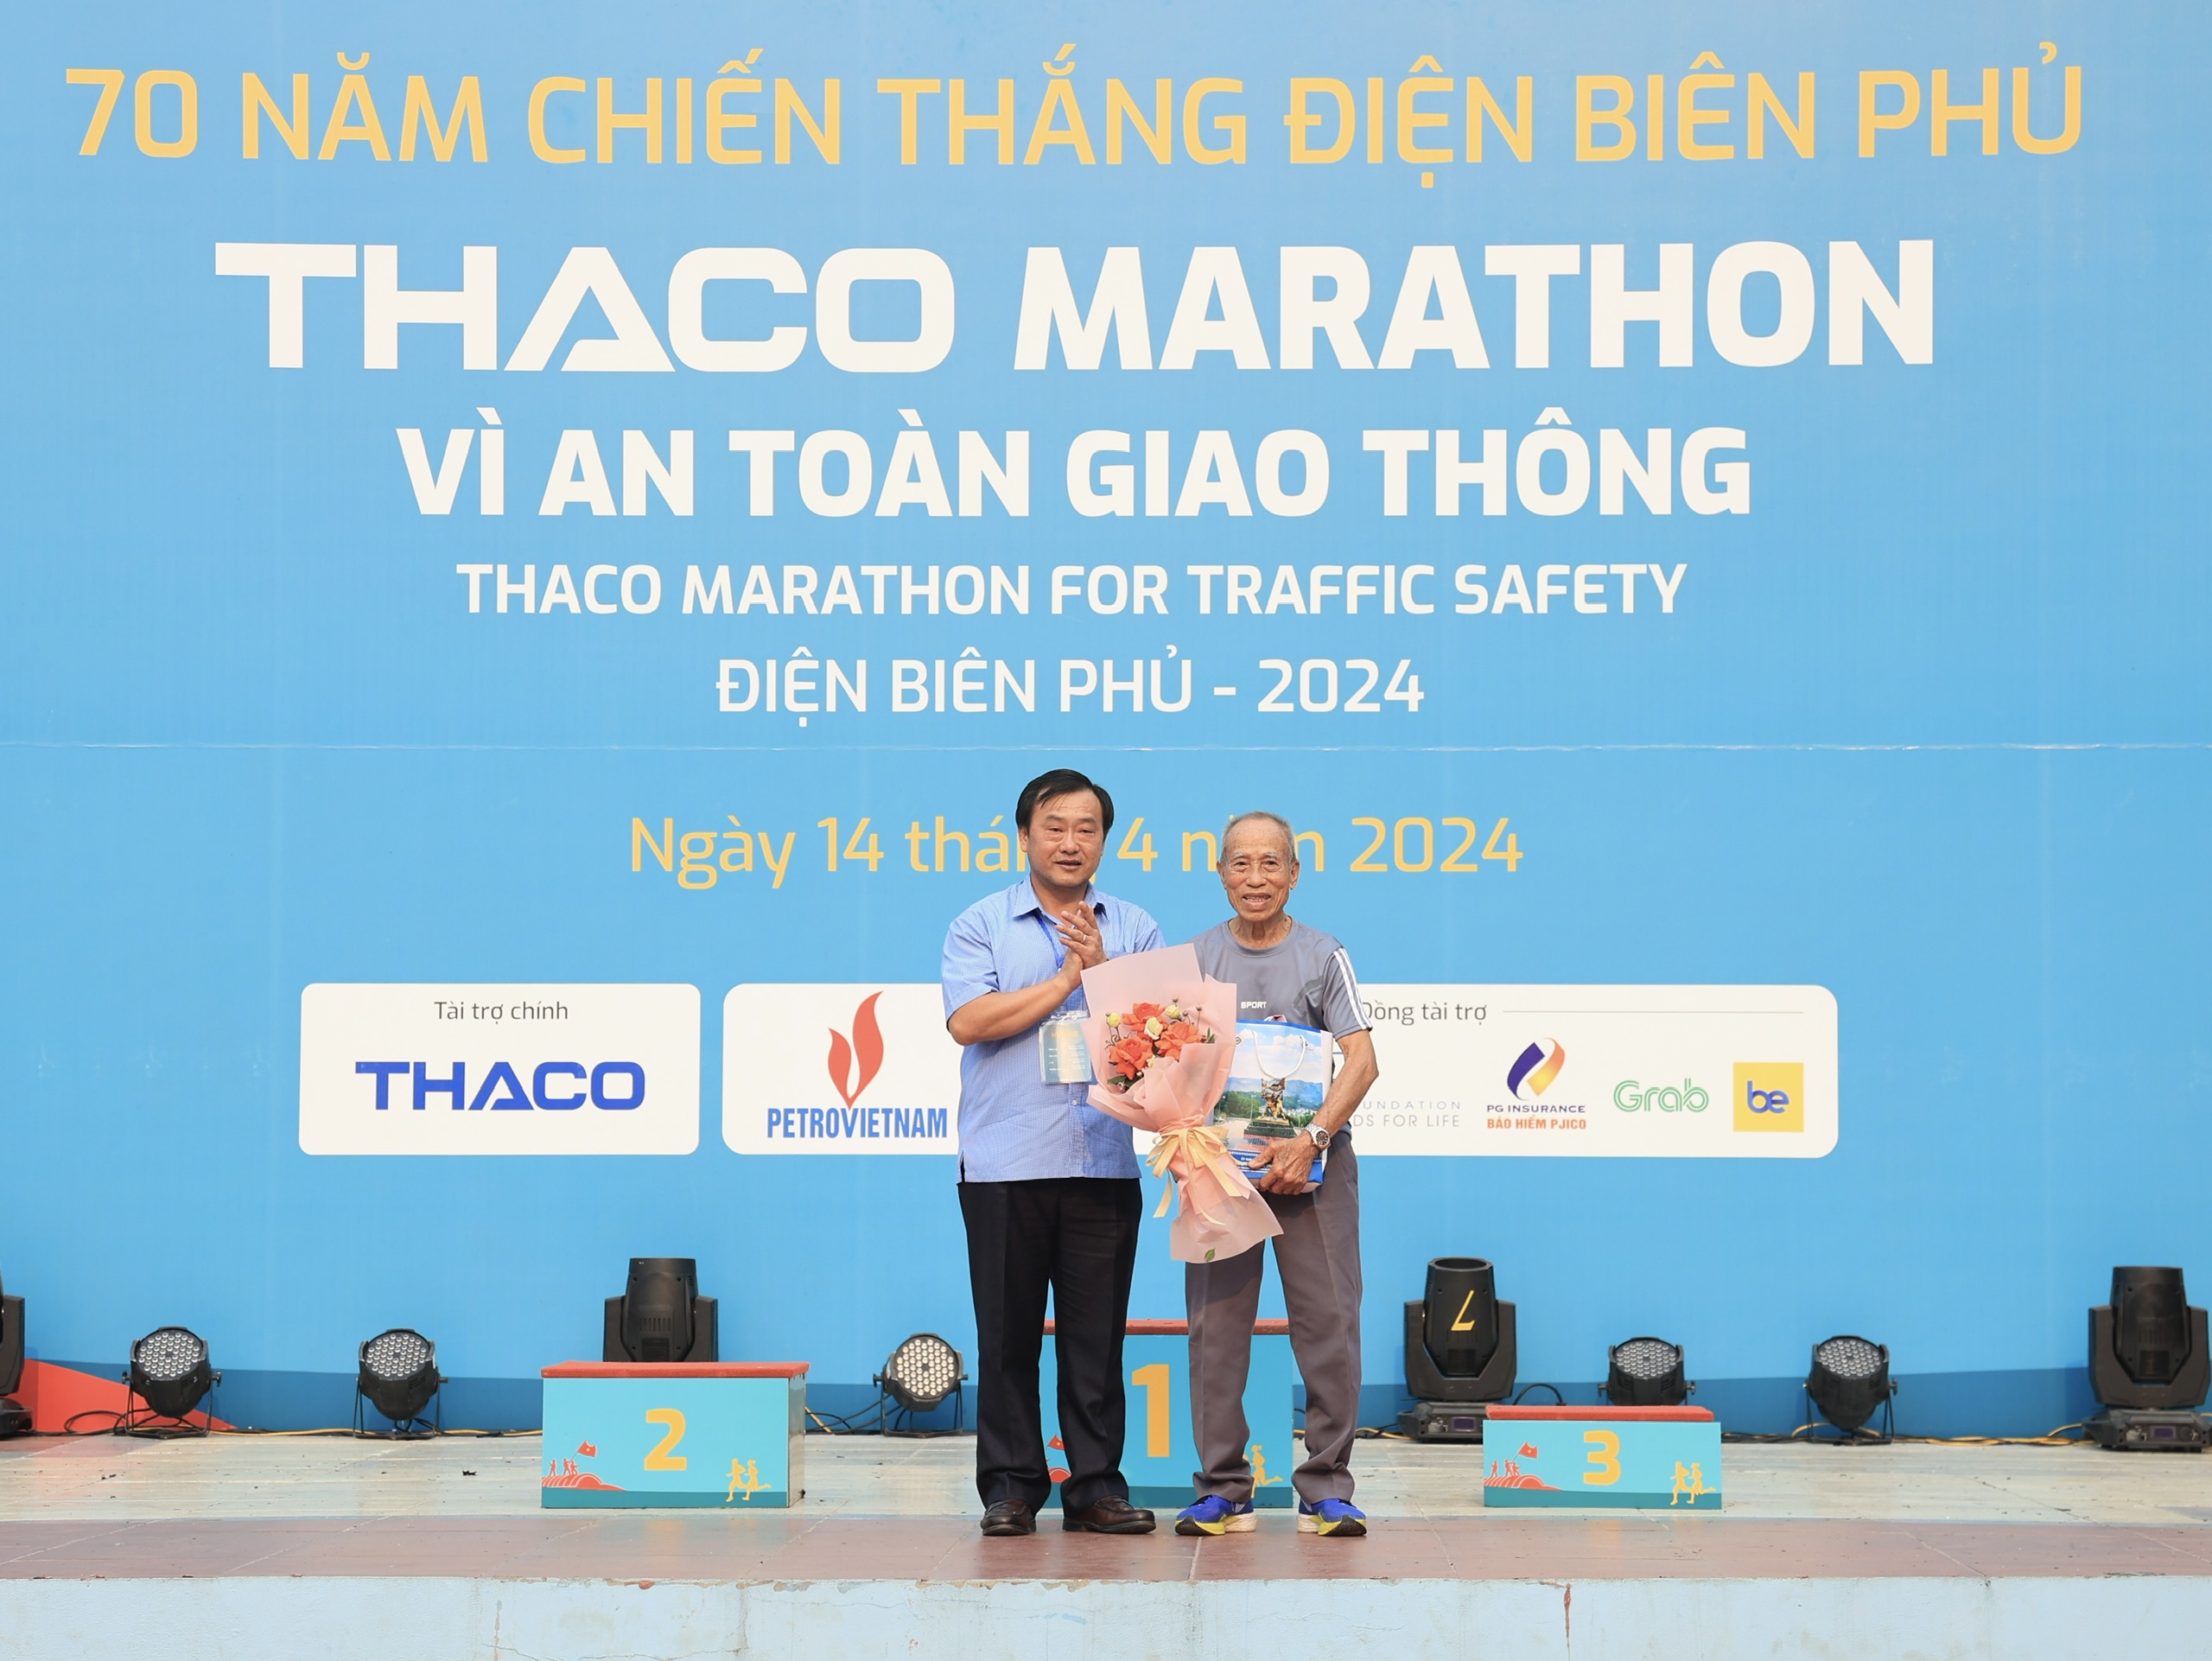 Trực tiếp: Giải THACO Marathon vì ATGT - Điện Biên Phủ 2024 thành công rực rỡ- Ảnh 13.